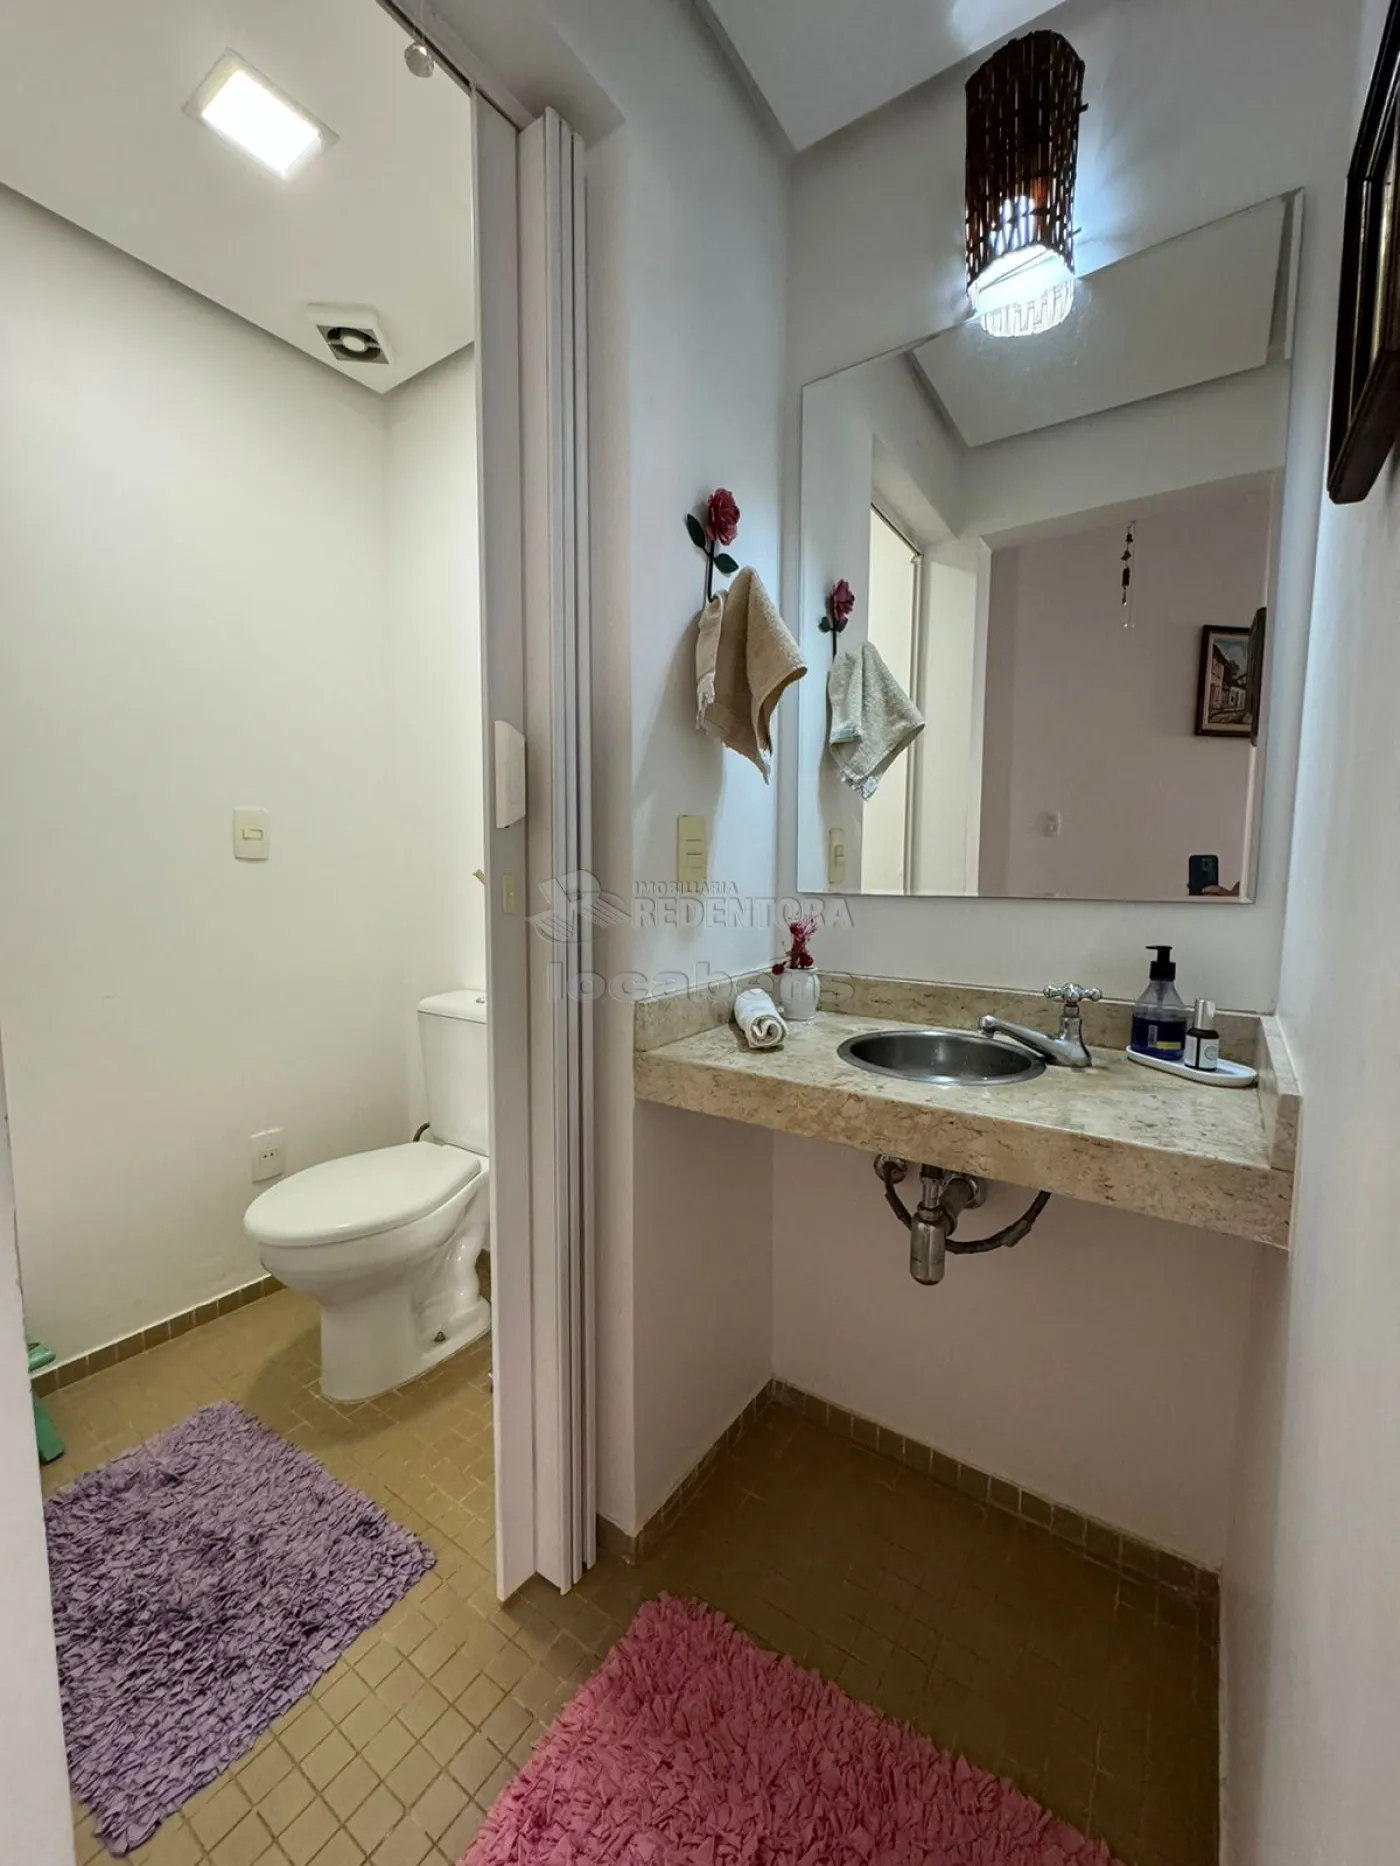 Alugar Casa / Condomínio em São José do Rio Preto apenas R$ 10.000,00 - Foto 20